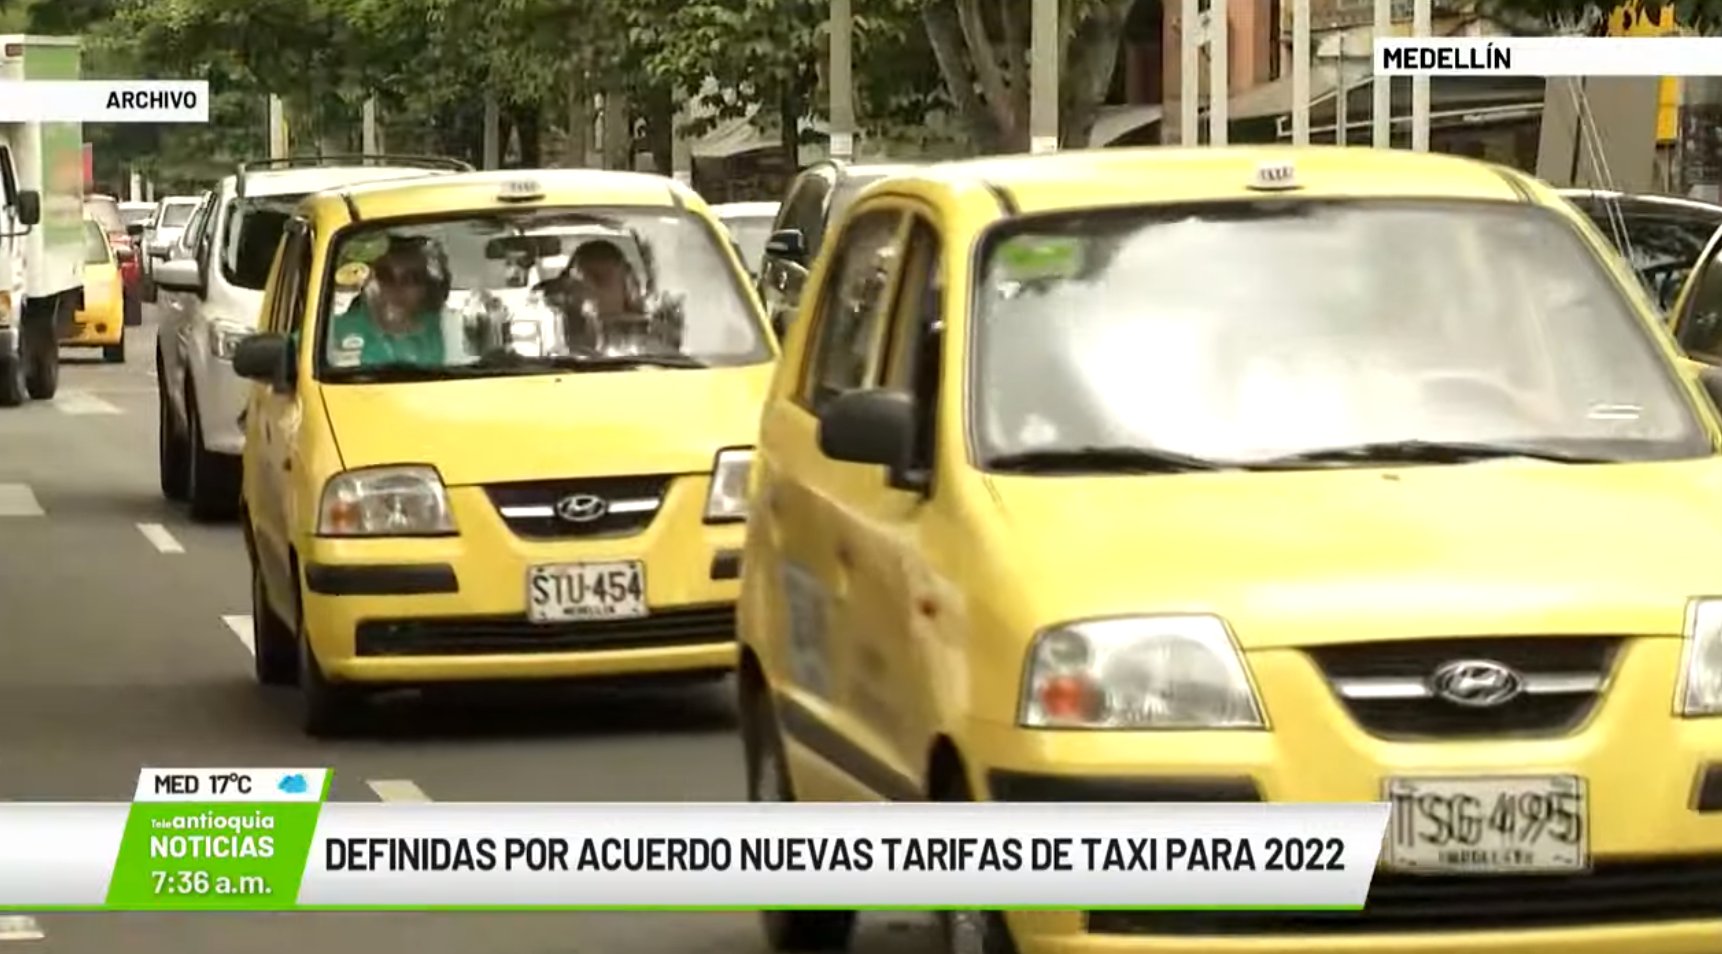 Definidas por acuerdo nuevas tarifas de taxi para 2022